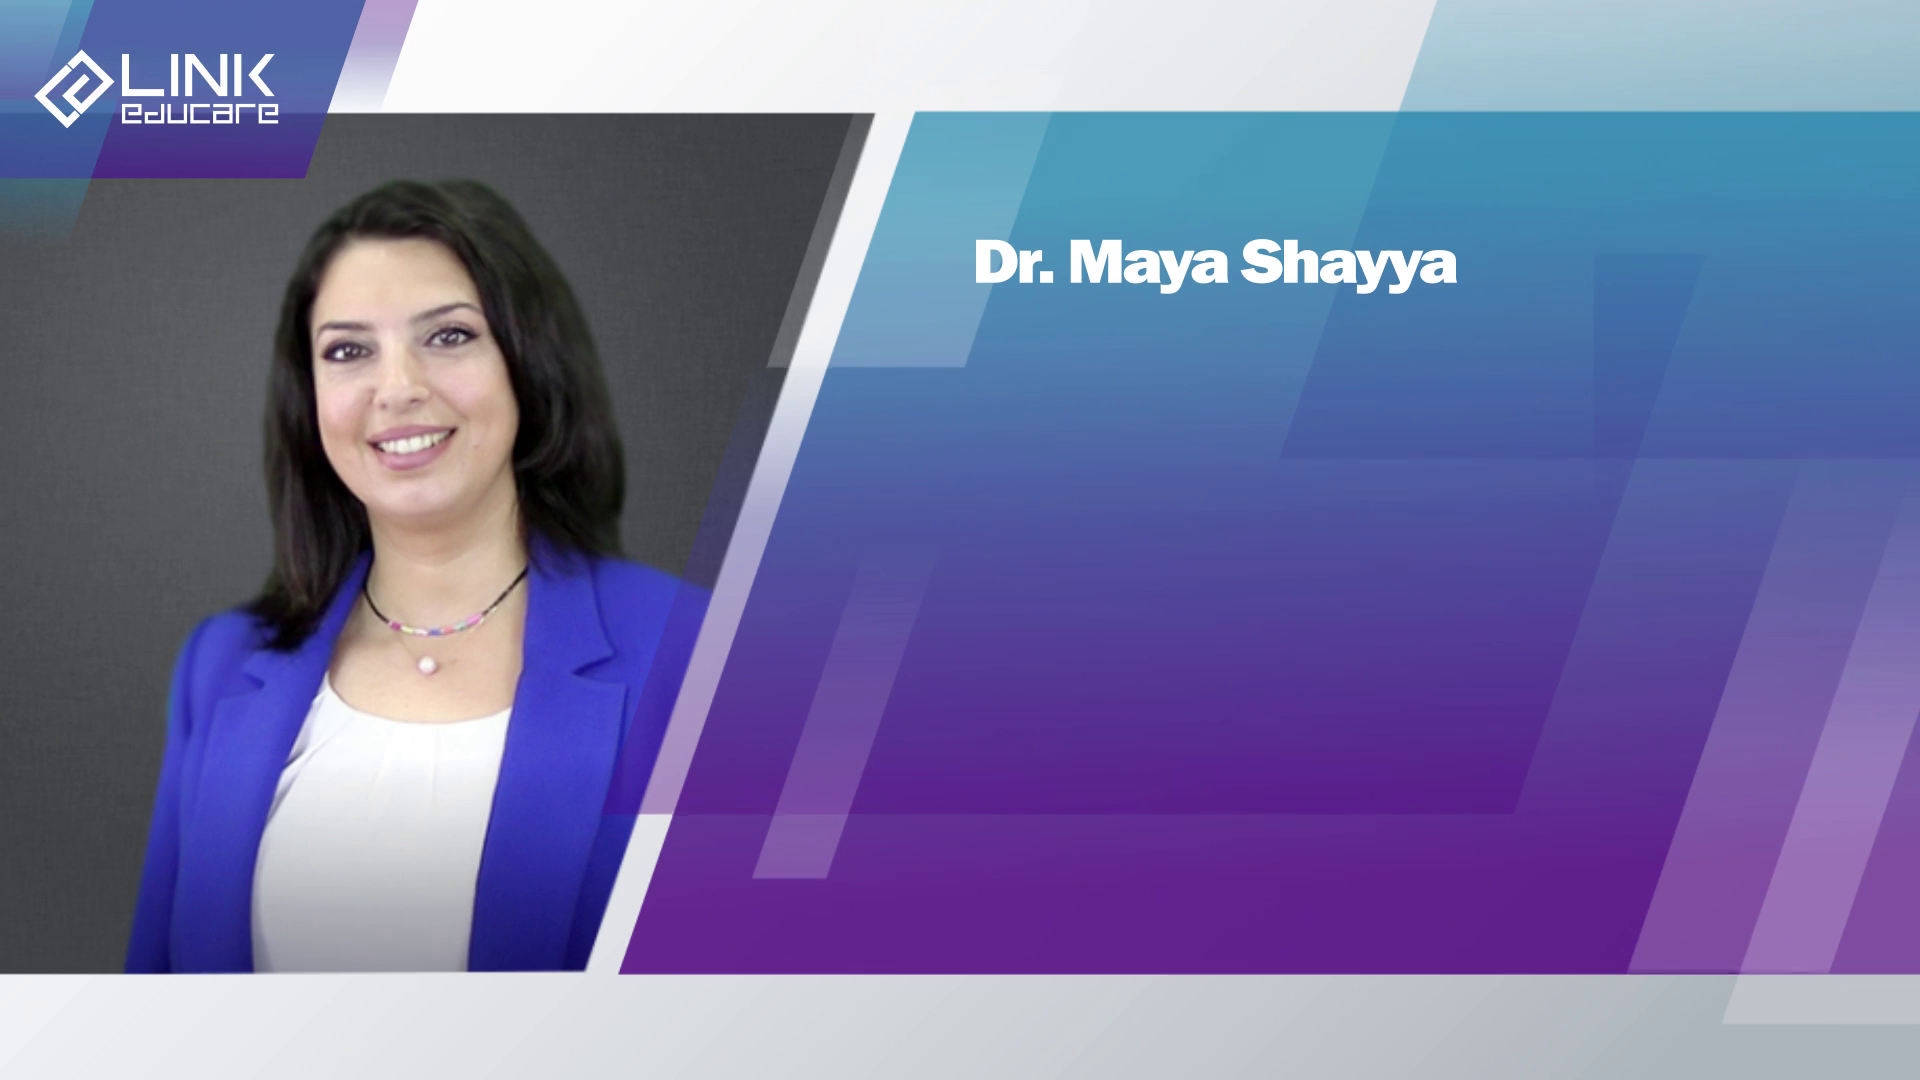 Dr. Maya Shayya